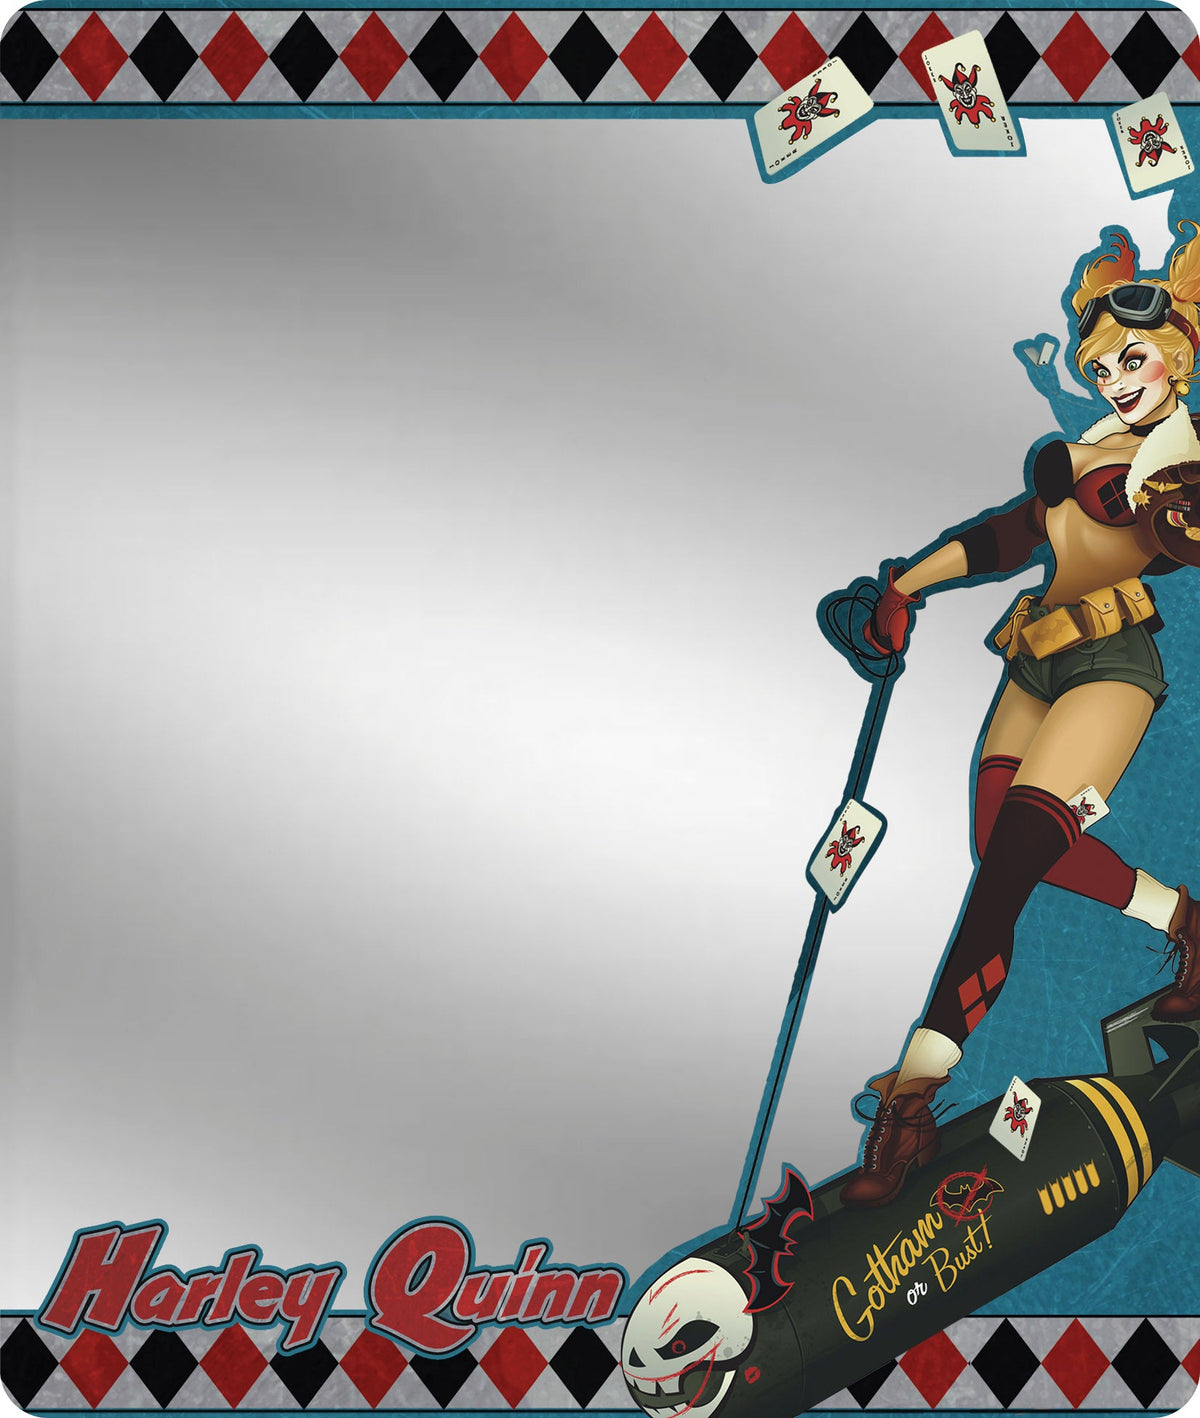 Locker Mirror - Harley Quinn Bombshell Pose Joker Cards Diamonds Blue White Red Black